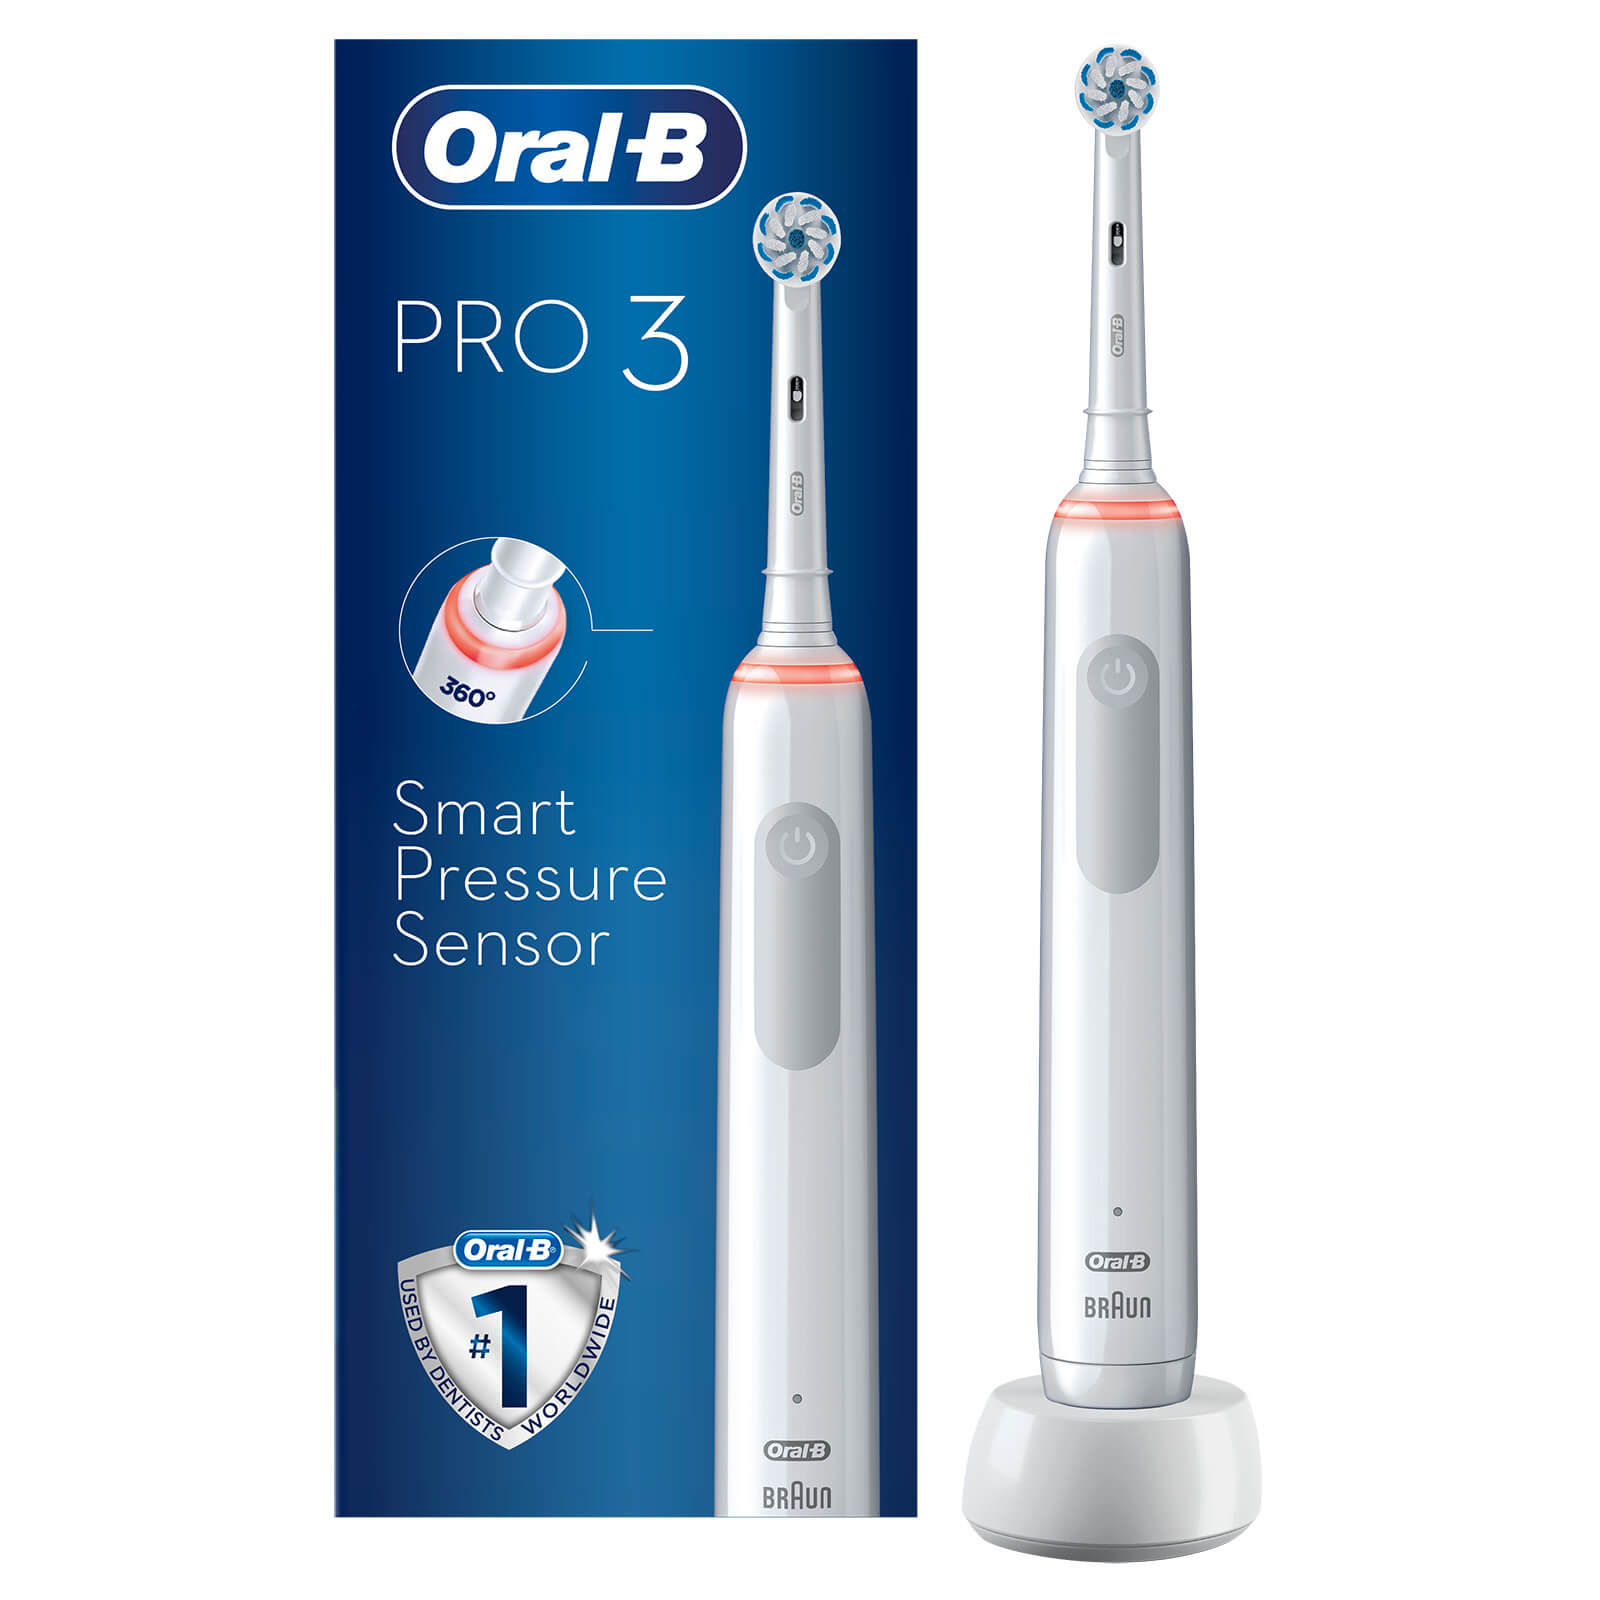 Oral B Oral-b Pro 3000 Sensitive White Electric Toothbrush - Toothbrush